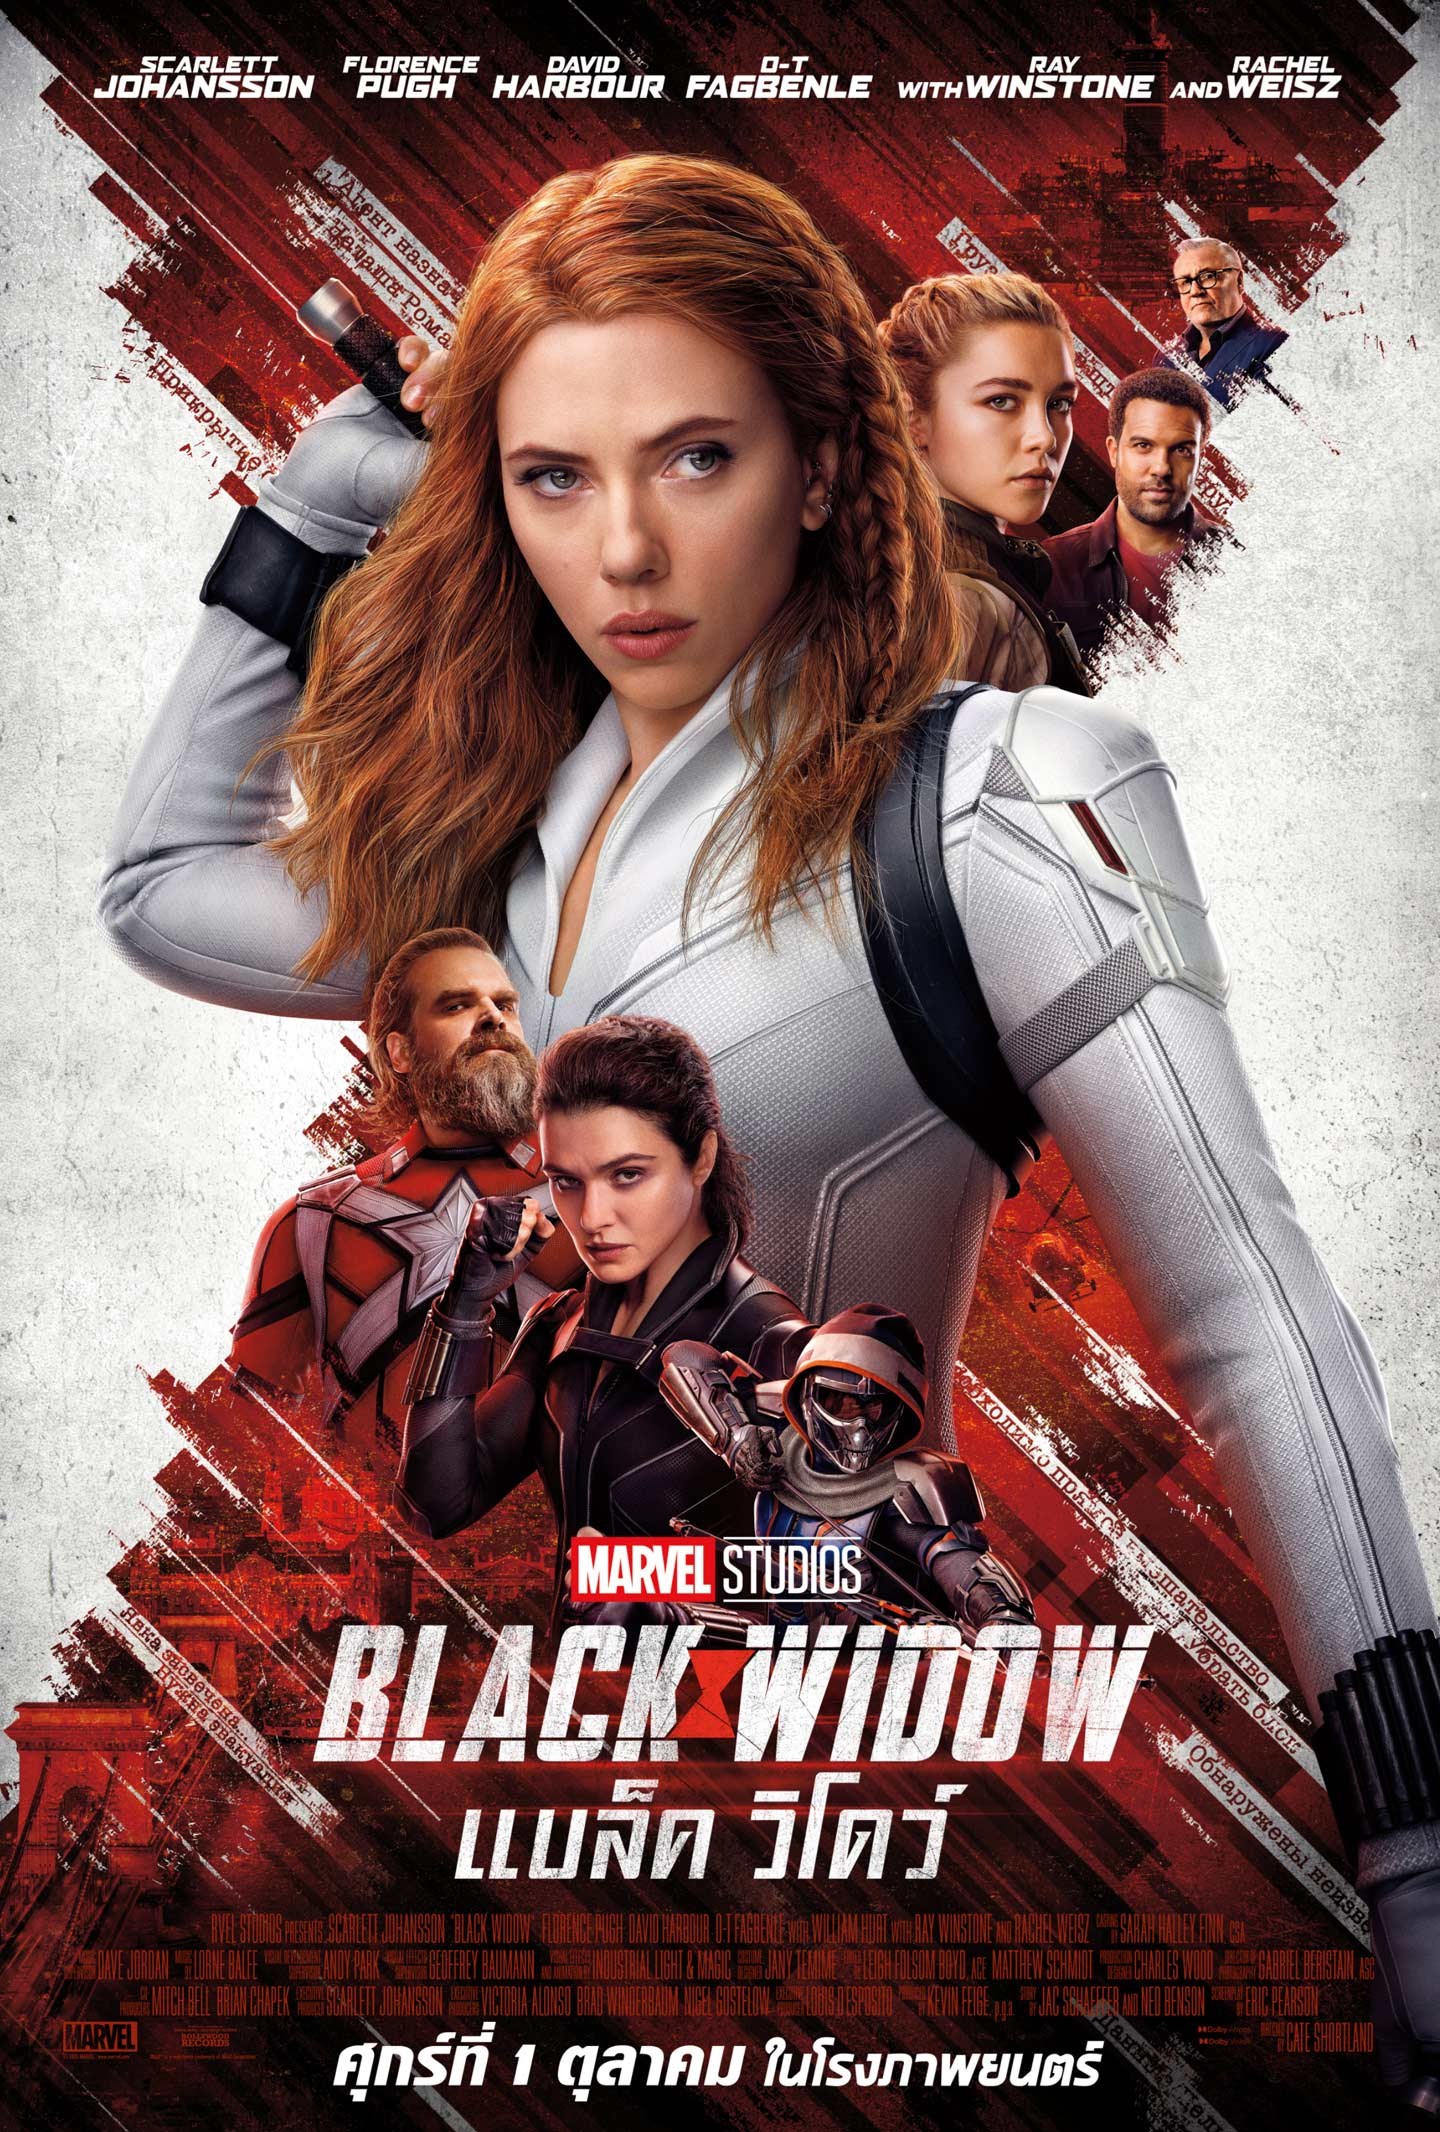 ดูหนังออนไลน์ฟรี ดูหนังออนไลน์ไม่มีสะดุด Black Widow 2021 แบล็ค วิโดว์ moviehdfree